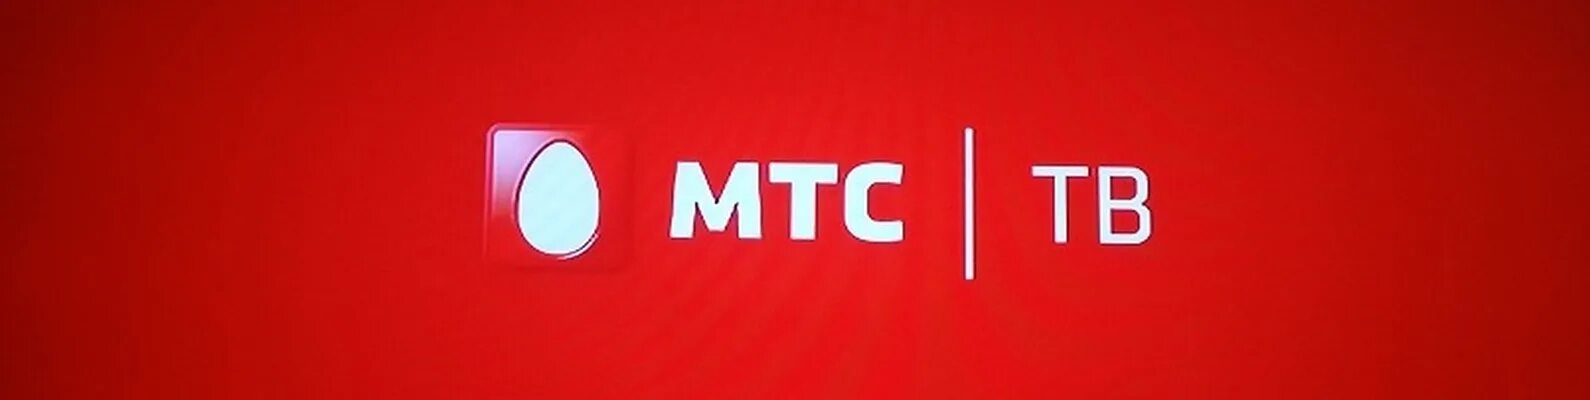 Мтс два телевизора. МТС. МТС логотип. Спутниковое Телевидение МТС. СТВ МТС логотип.